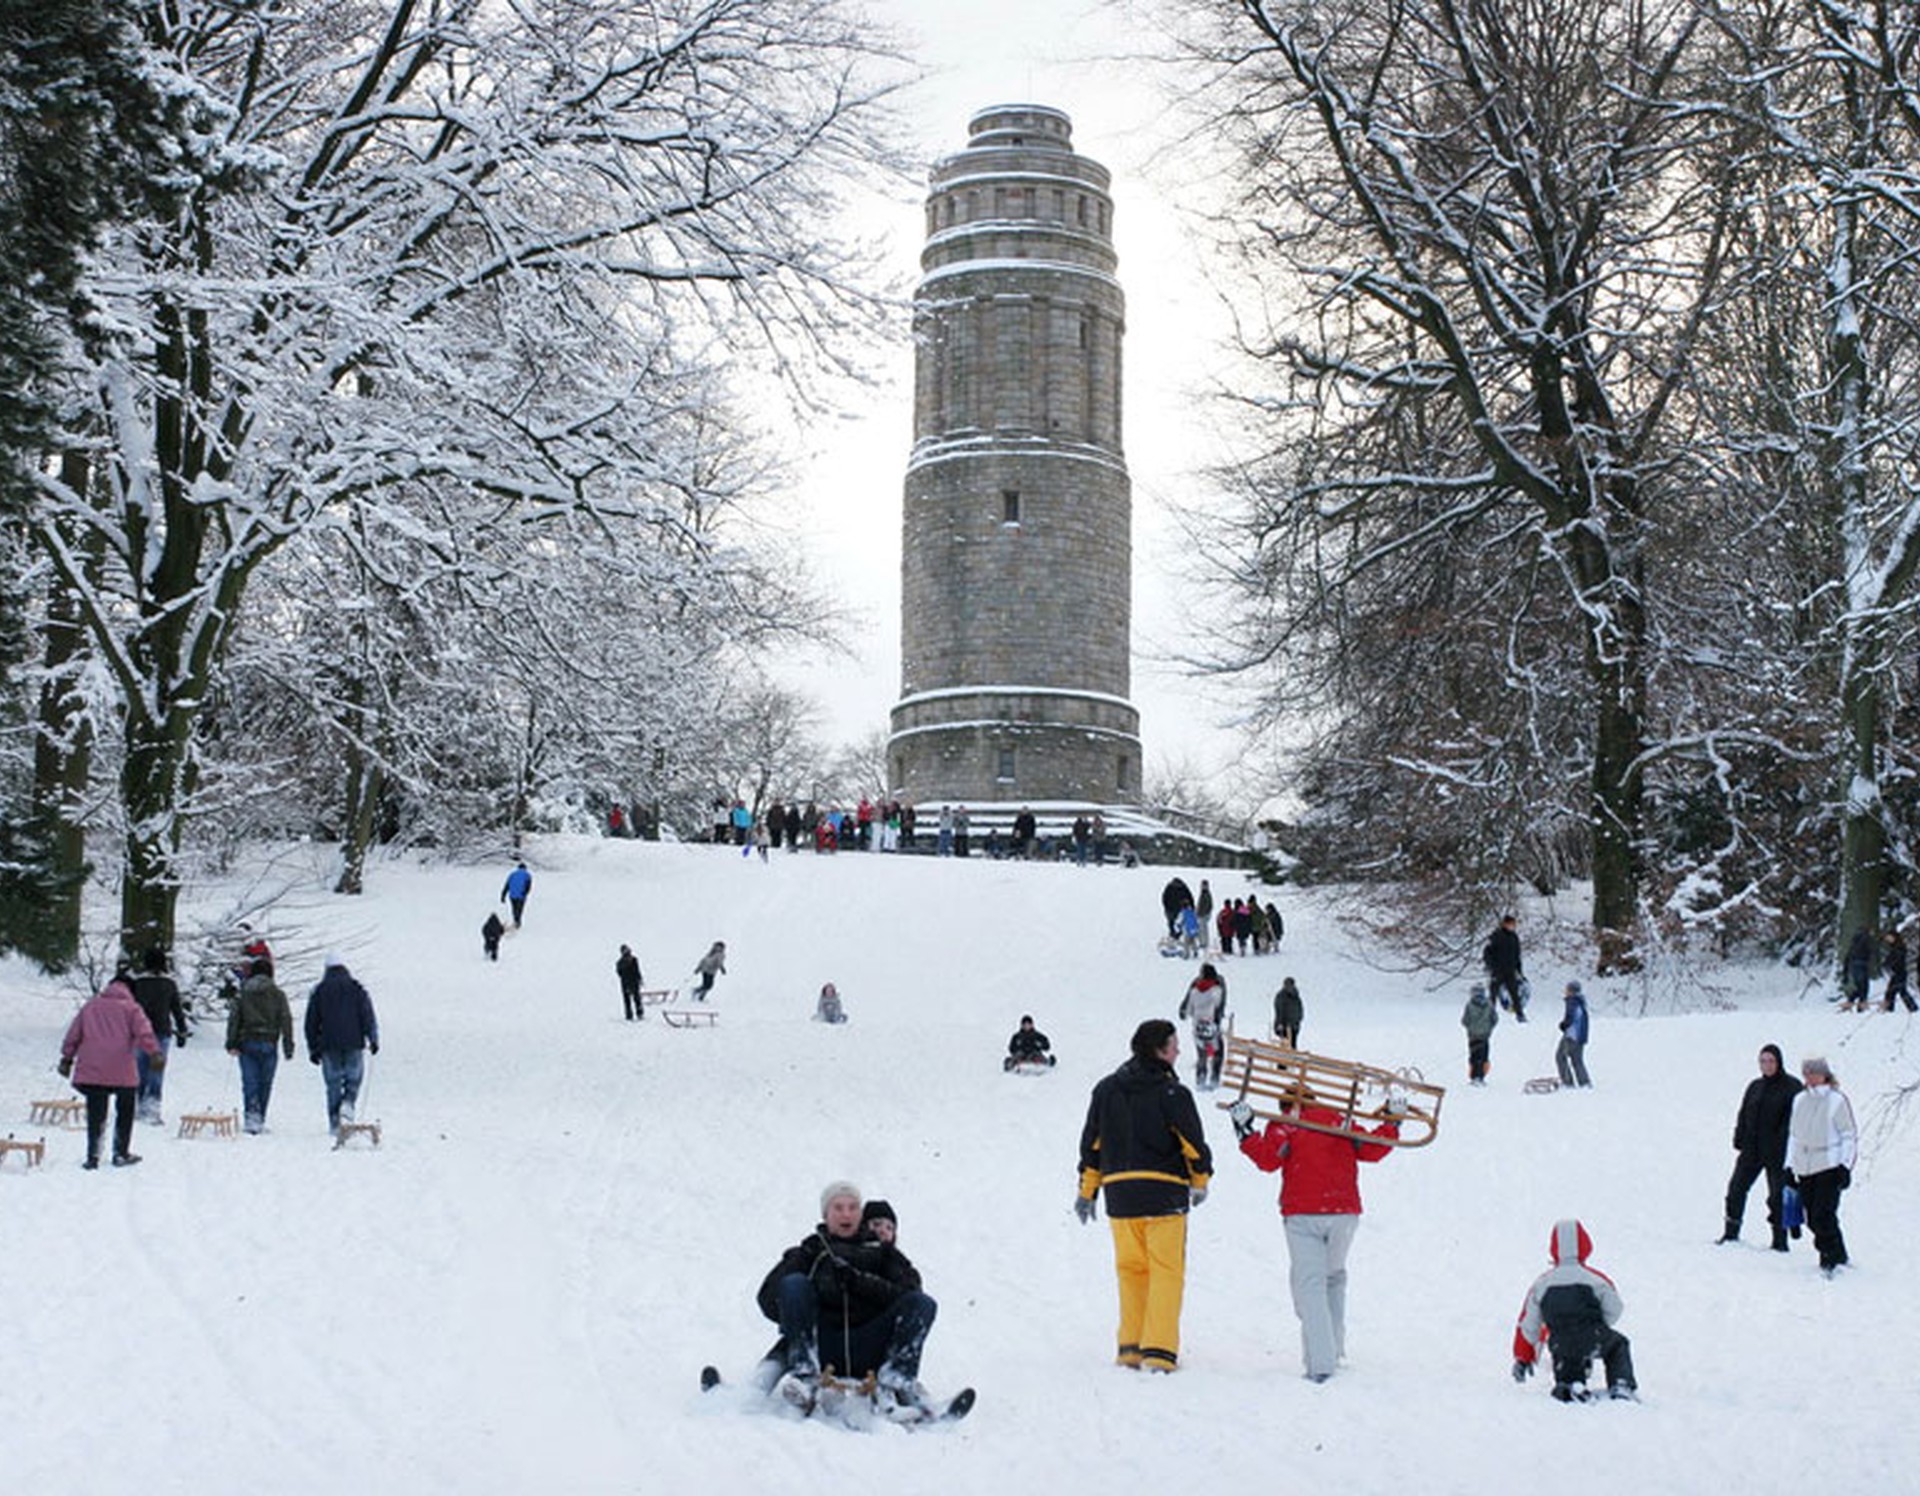 Der Bismarckturm im Stadtpark Bochum im Winter. Zahlreiche Menschen nutzen den Schnee zum Schlittenfahren.